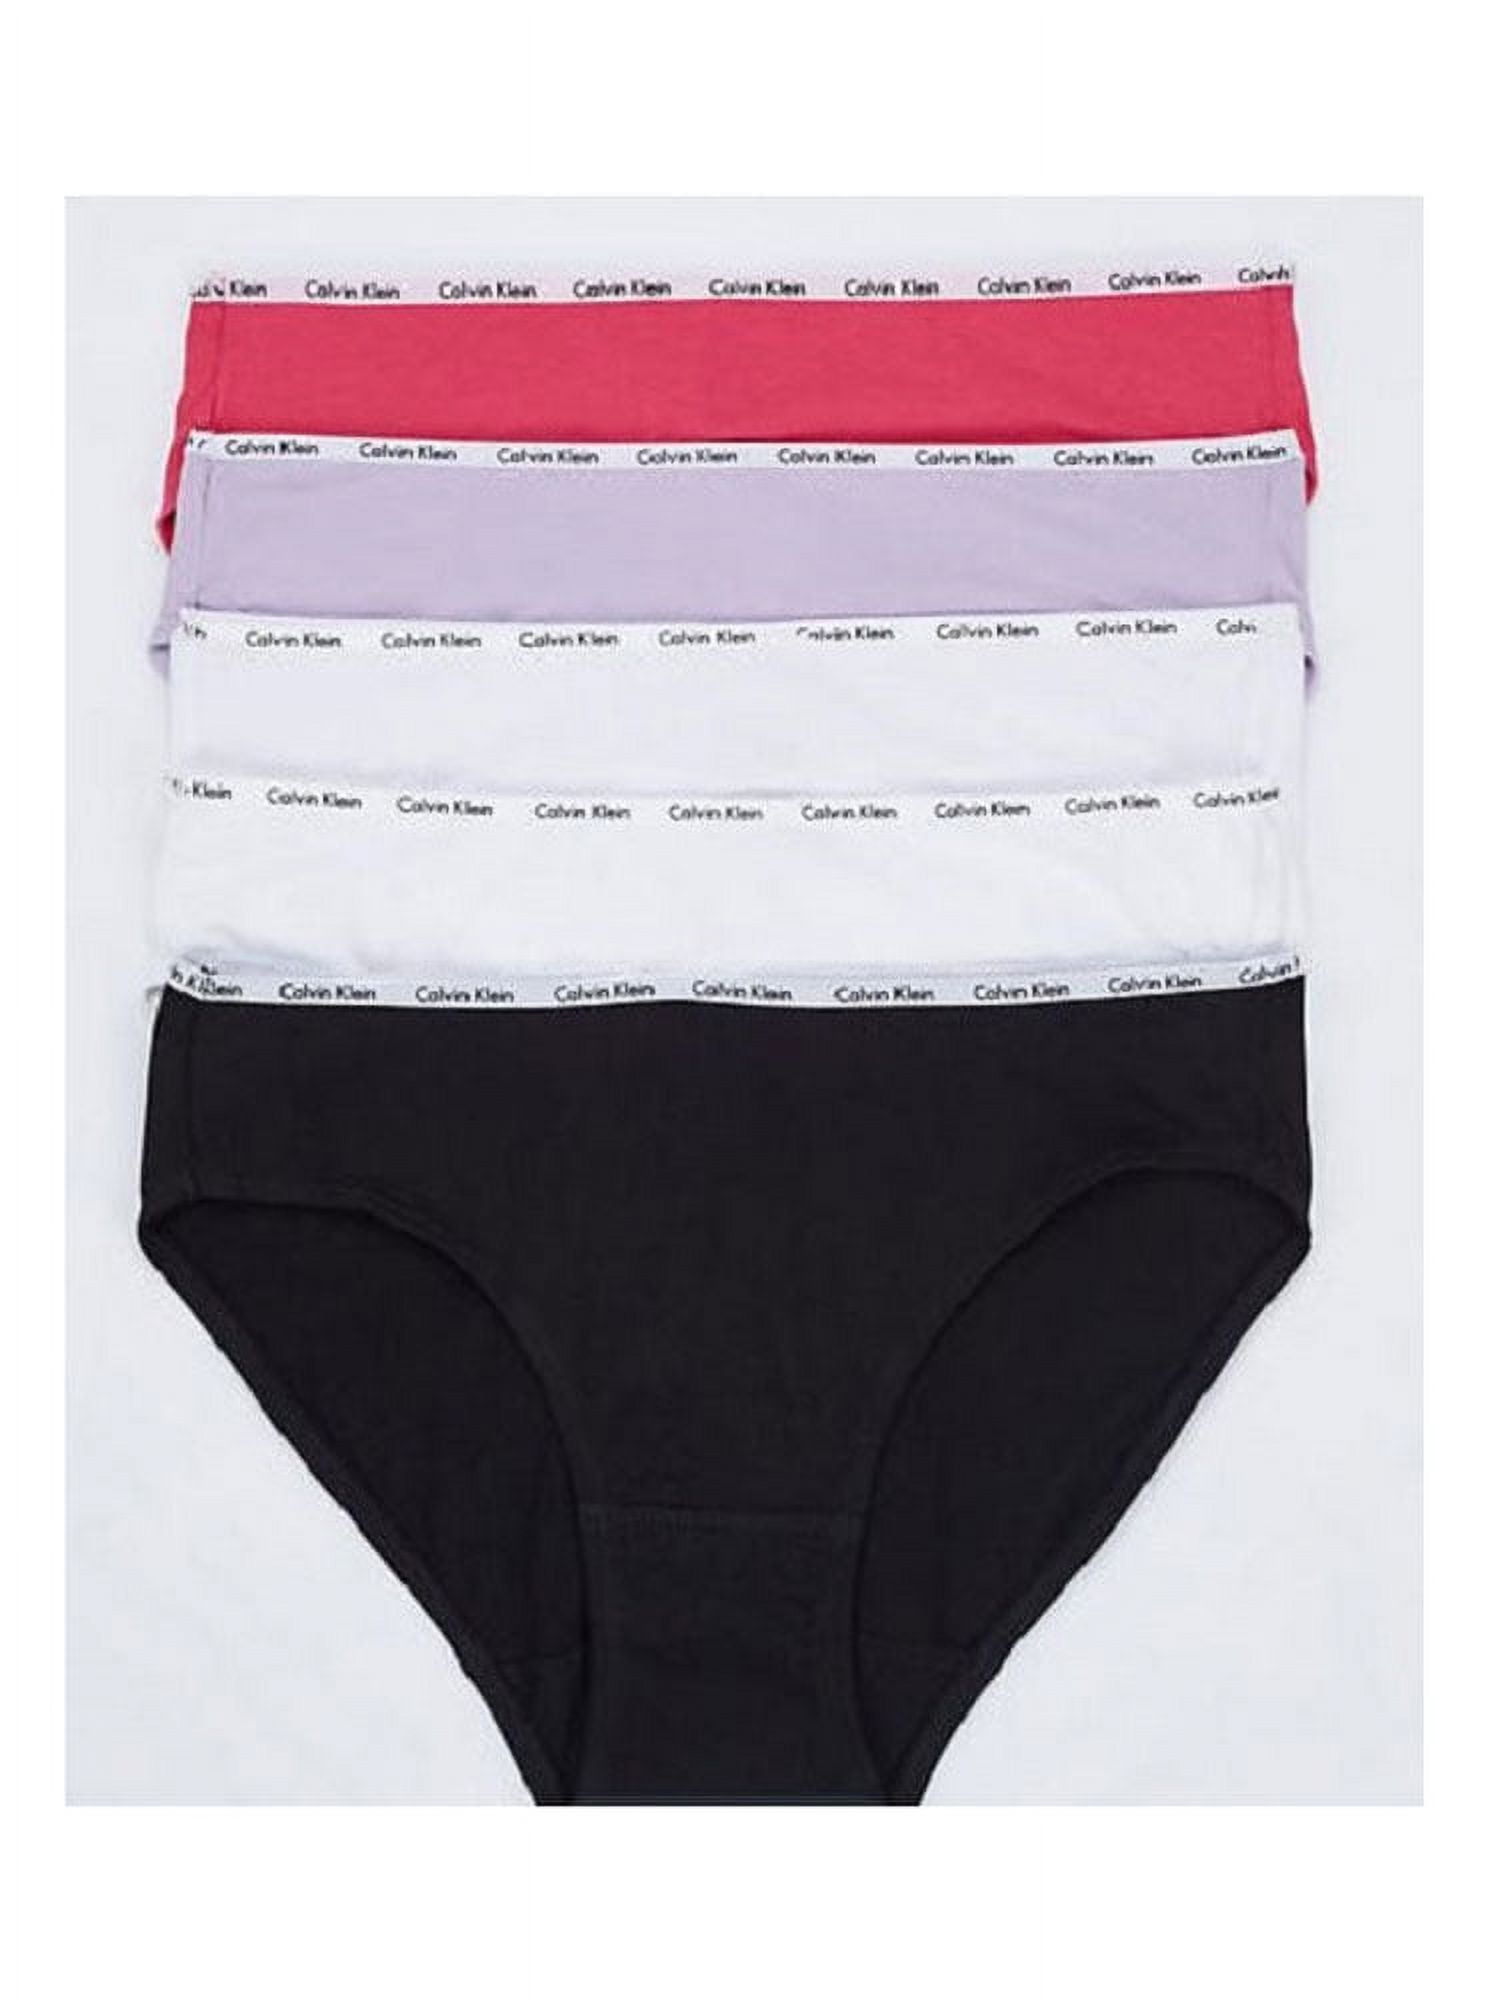 Calvin Klein Women's Cotton Stretch Logo Bikini Panty 5 Pack, Black/White/Gen  